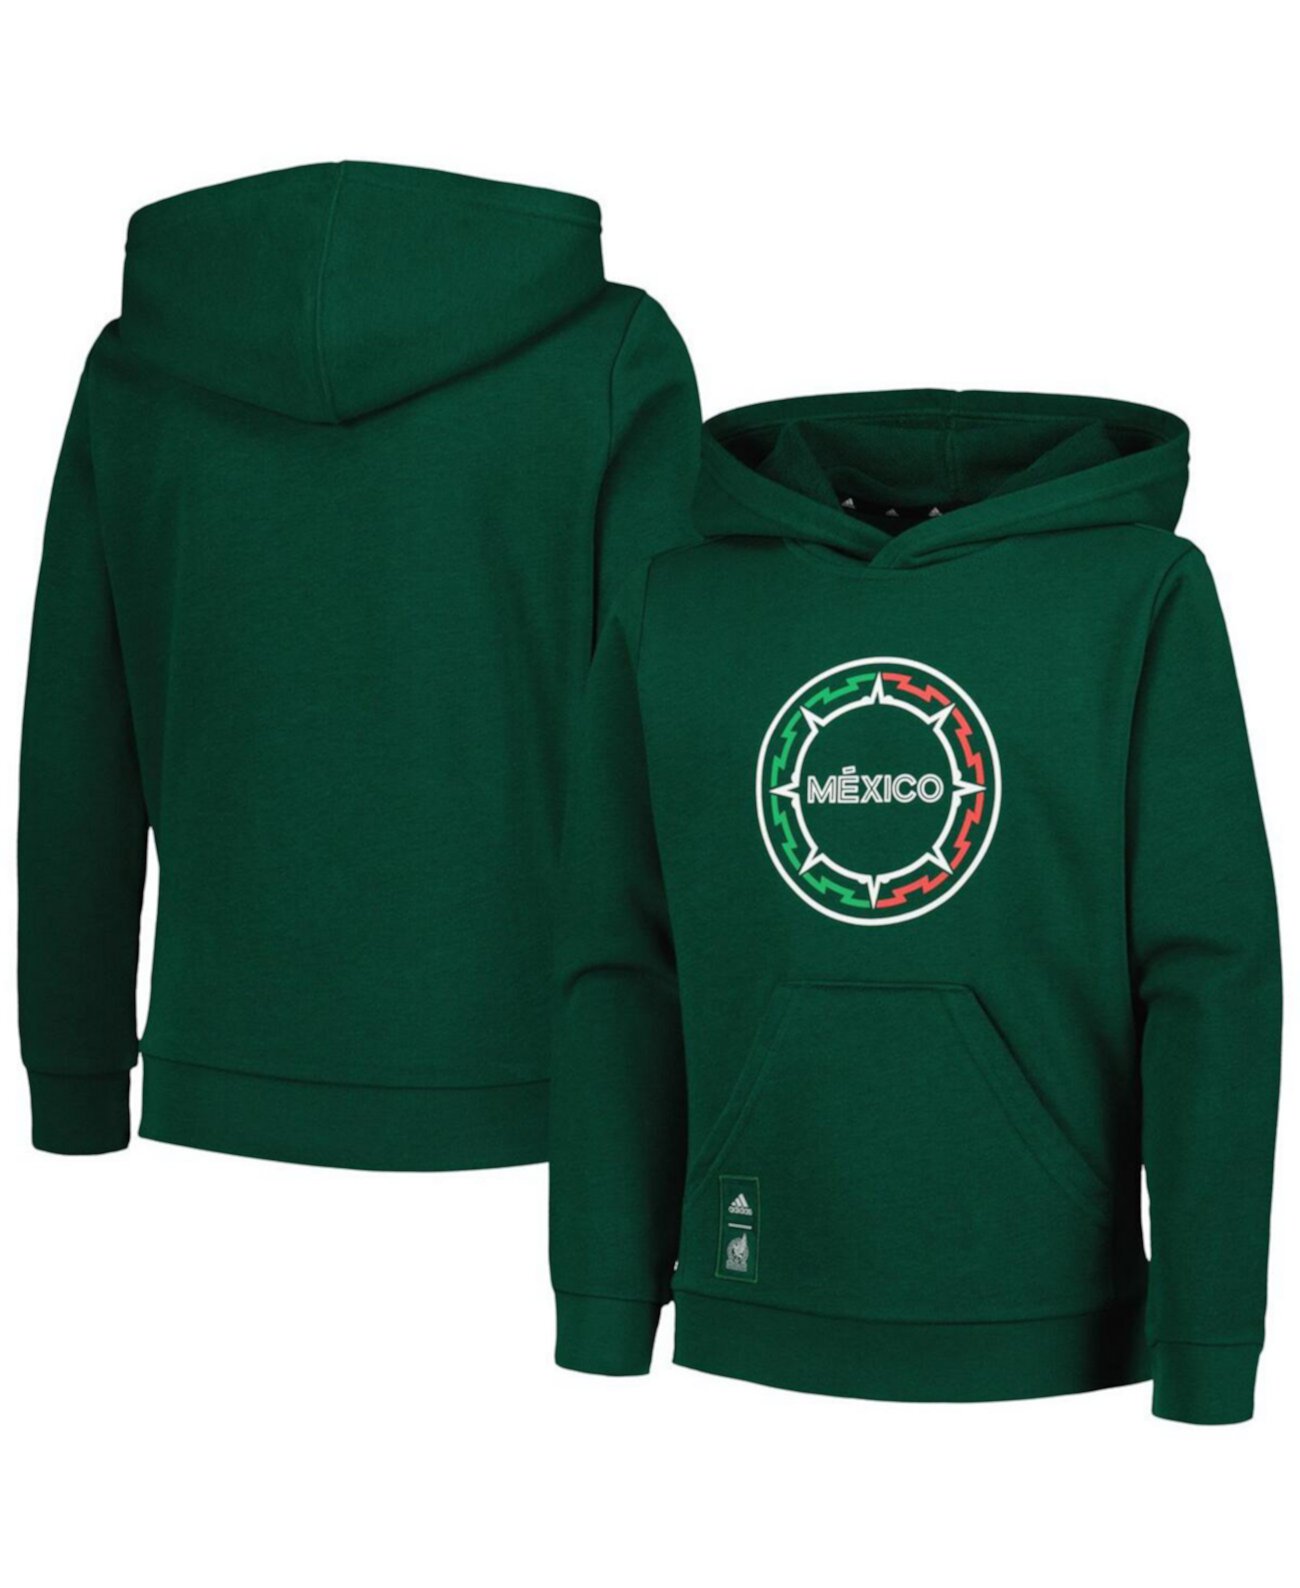 Зеленый пуловер с капюшоном для мальчиков Big Boys, сборная Мексики Adidas